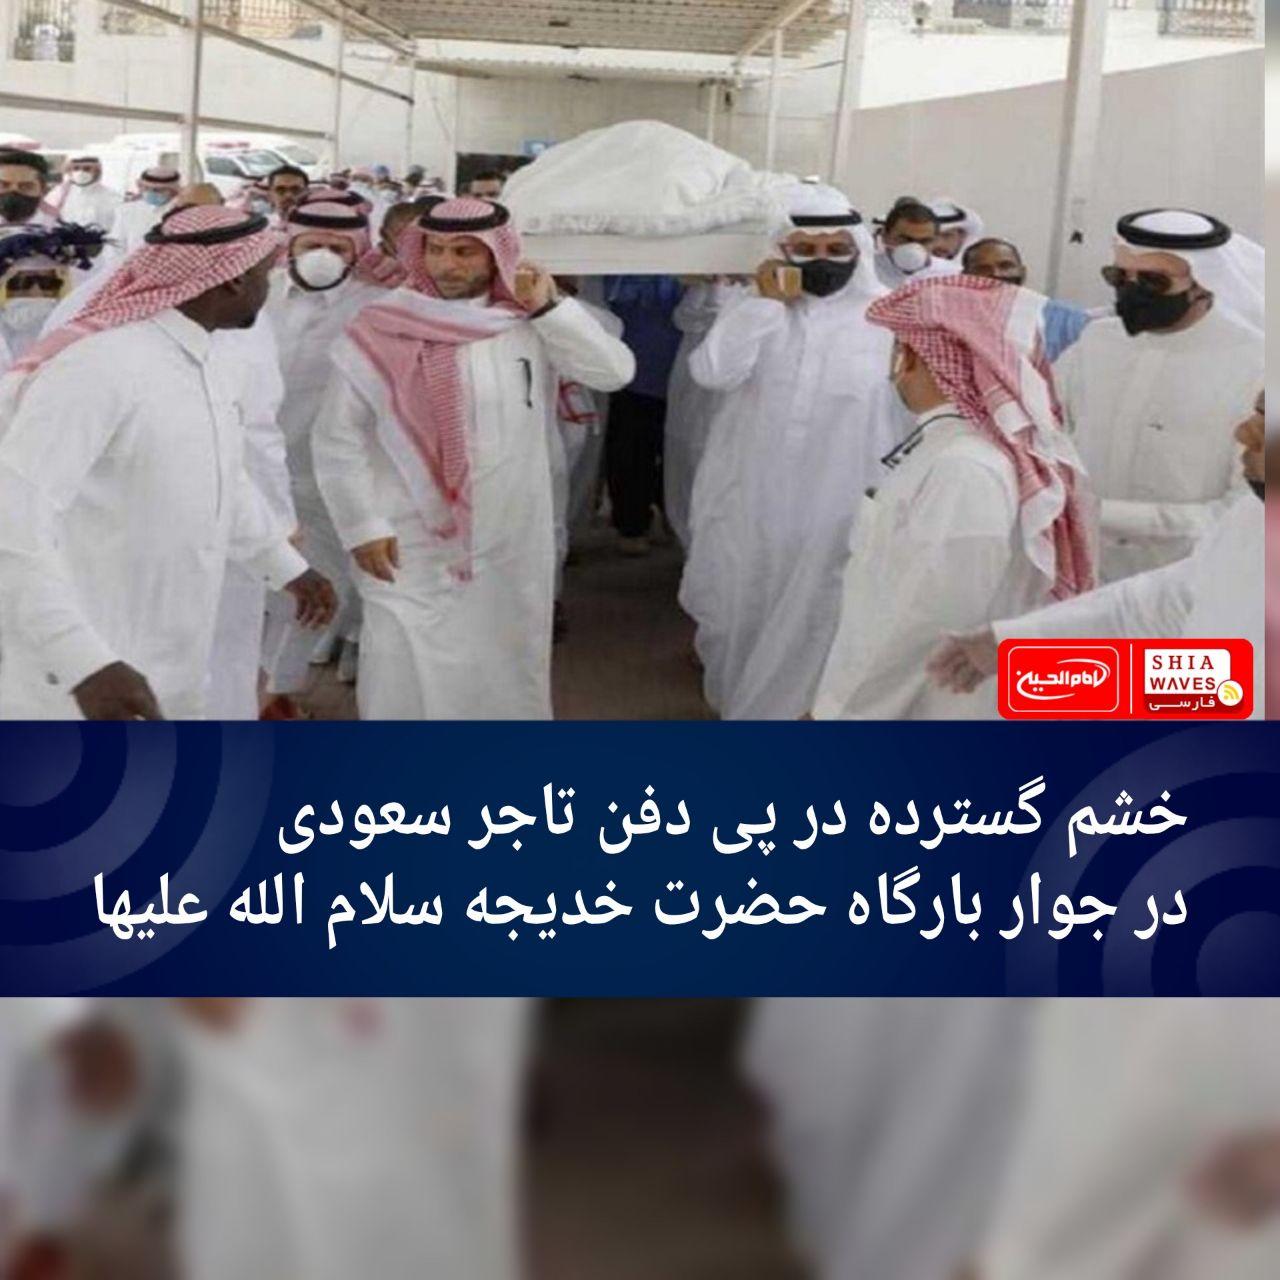 تصویر خشم گسترده در پی دفن تاجر سعودی در جوار بارگاه حضرت خدیجه سلام الله علیها